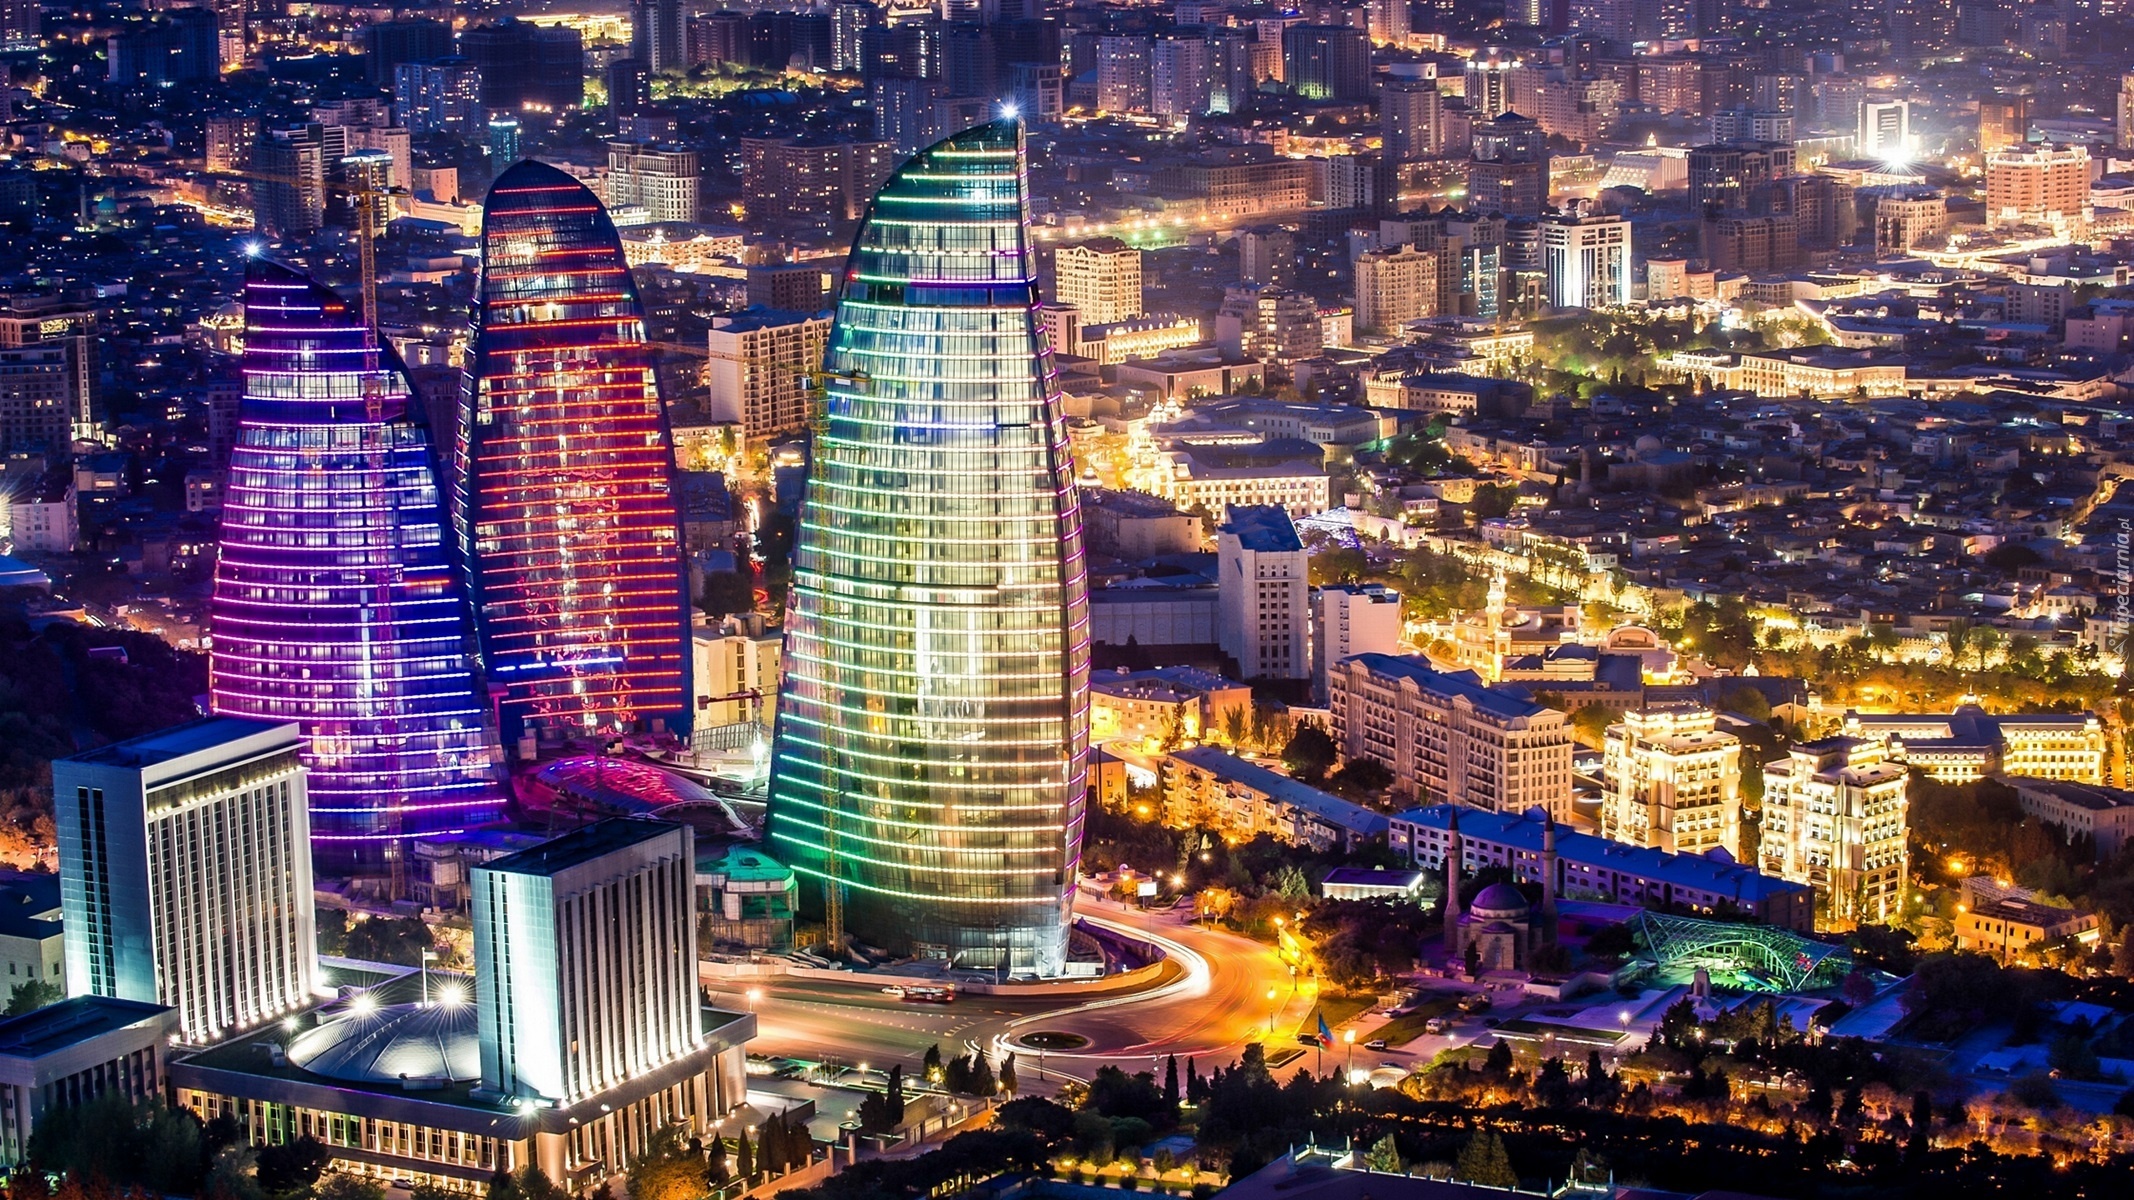 Miasto nocą, Azerbejdżan, Baku